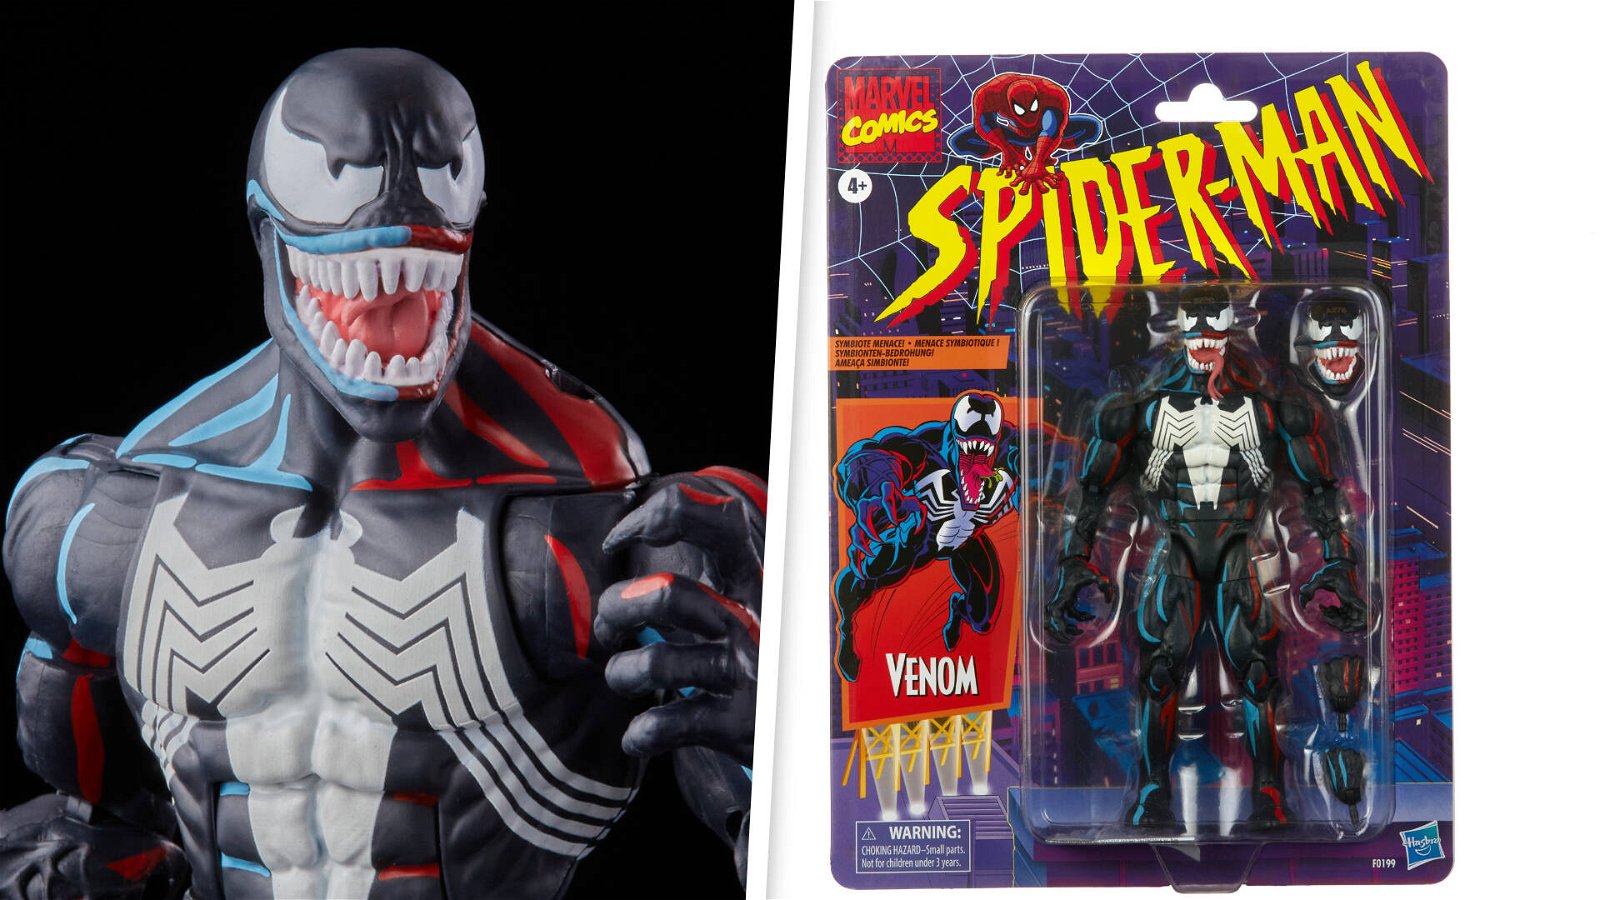 Immagine di Hasbro, la figure di Venom in esclusiva per i Campfire